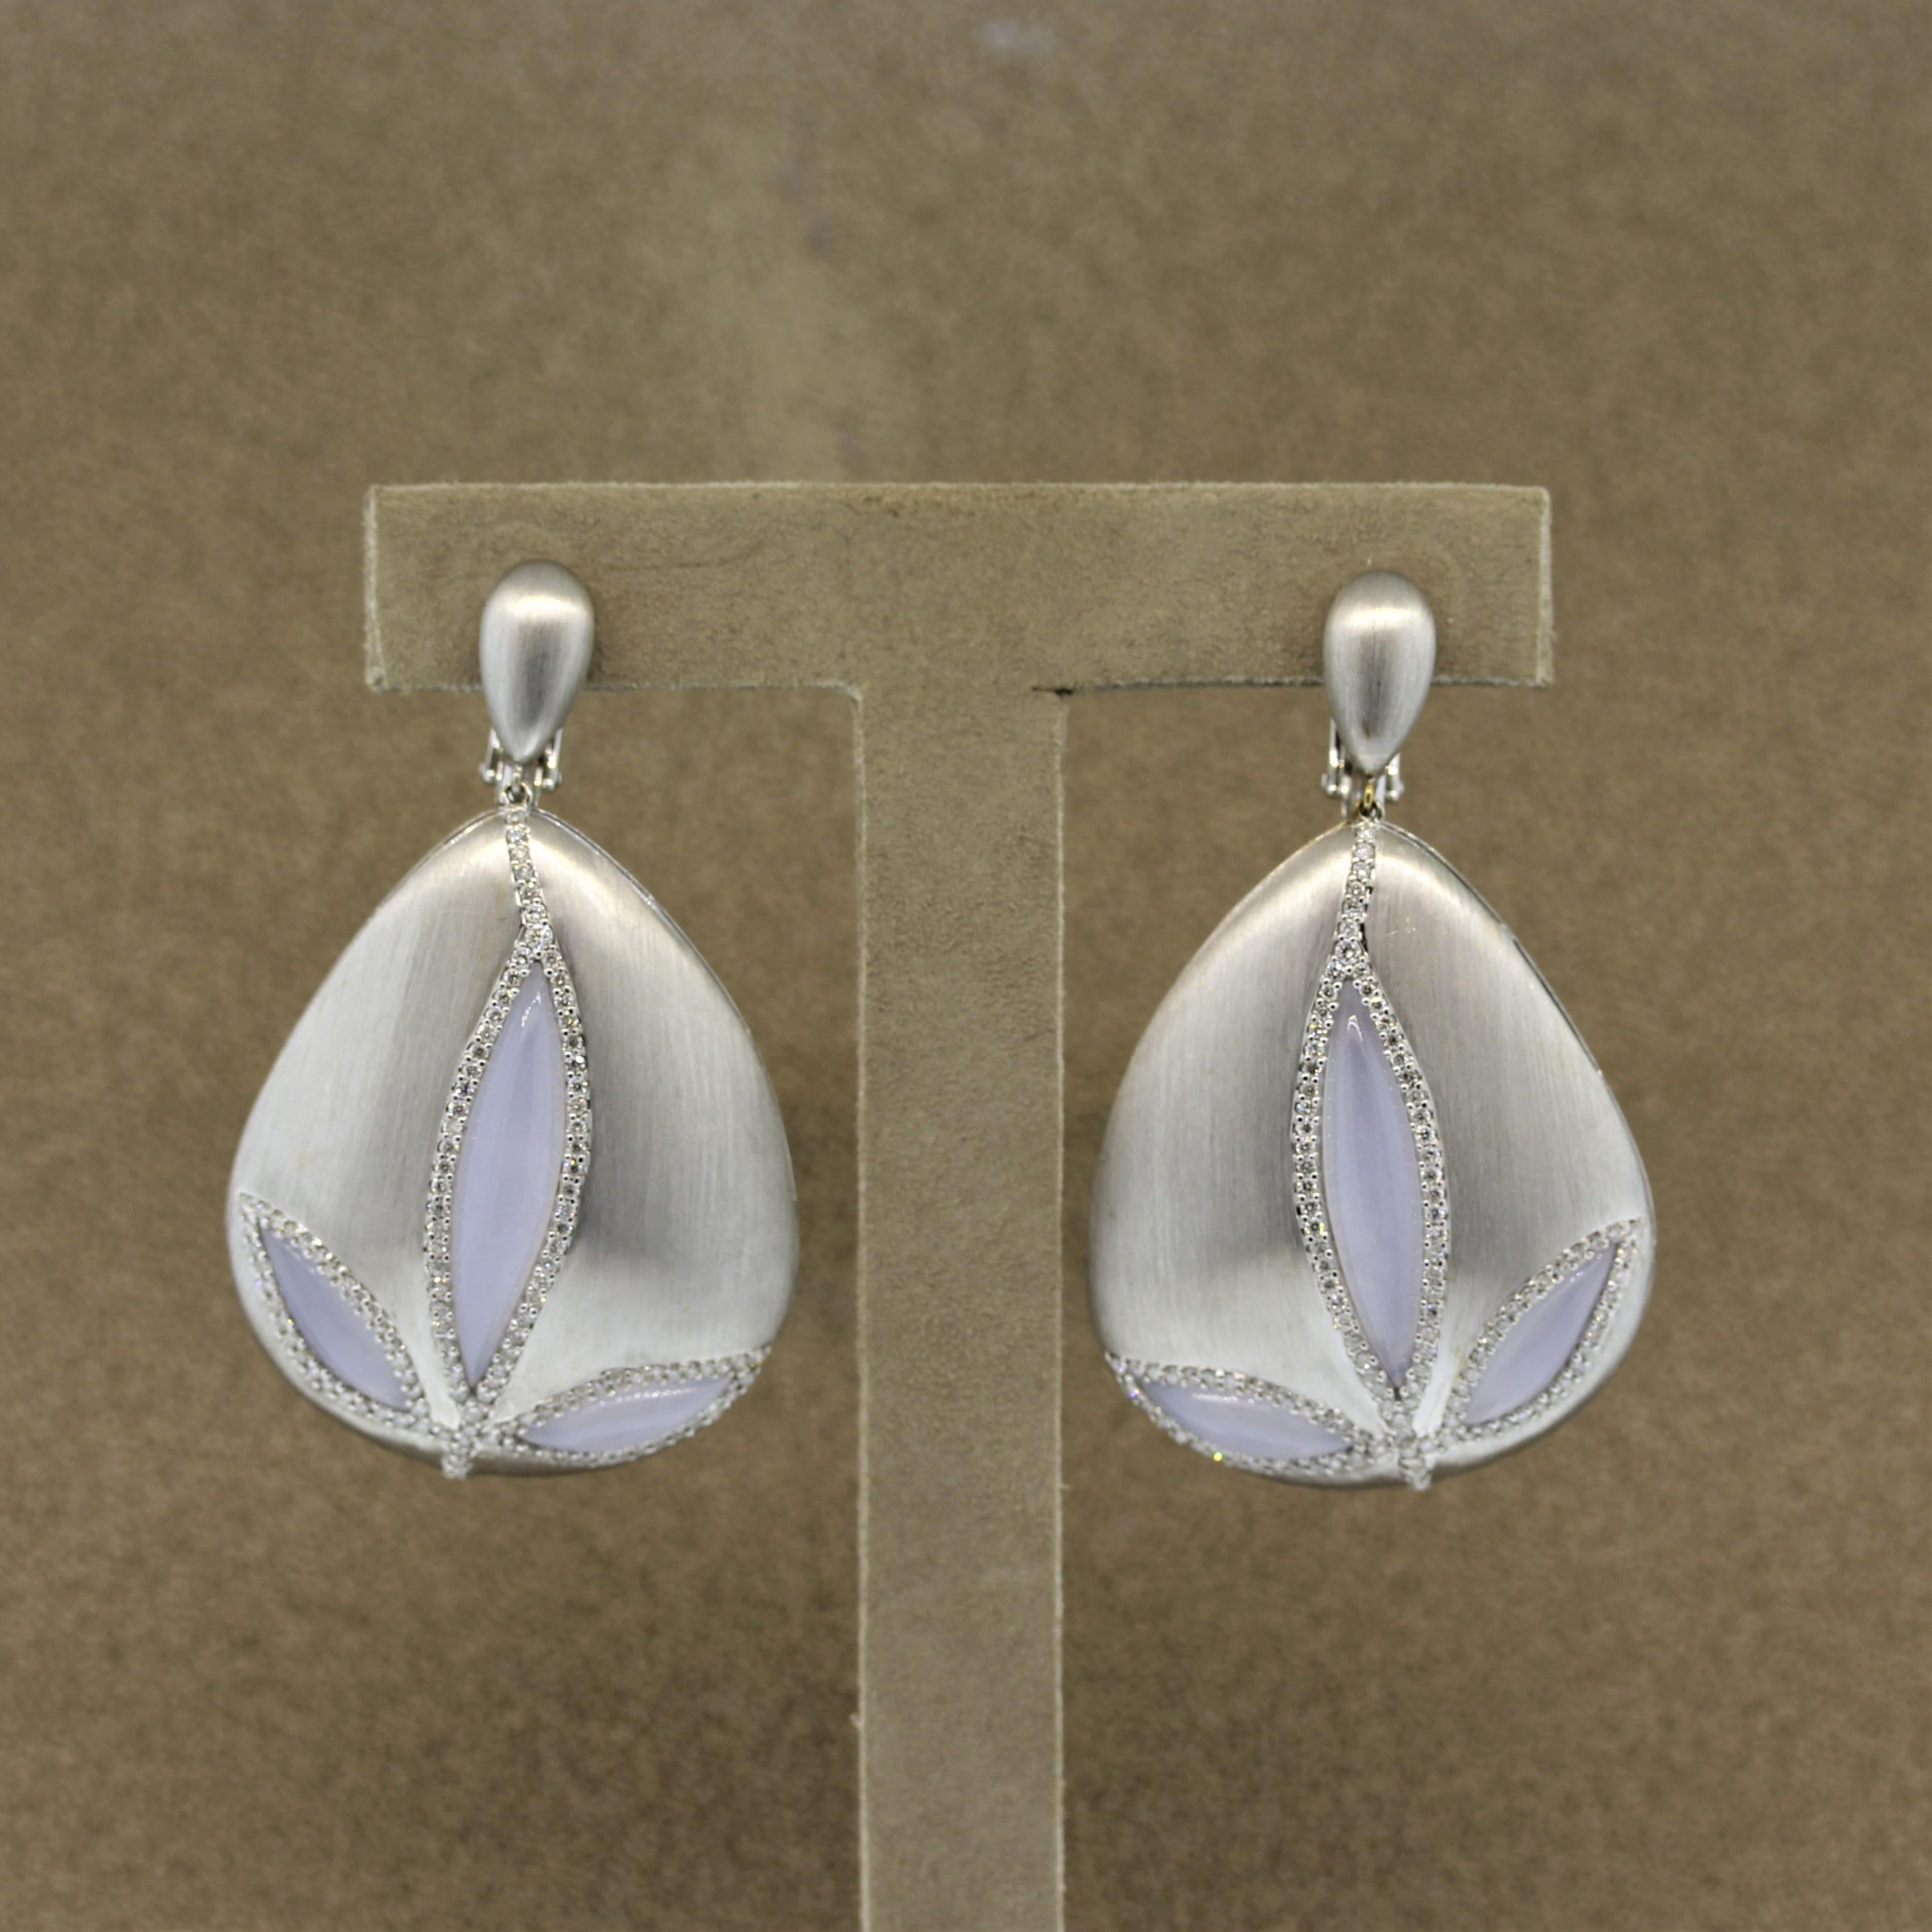 Ein süßes Paar Ohrringe, das einer Blume ähnelt. Sie bestehen aus 6 handgeschnitzten Mondsteinen mit einem Gesamtgewicht von 9,46 Karat, die von 1,86 Karat runden Diamanten im Brillantschliff umrahmt werden. Die Ohrringe sind aus 18-karätigem